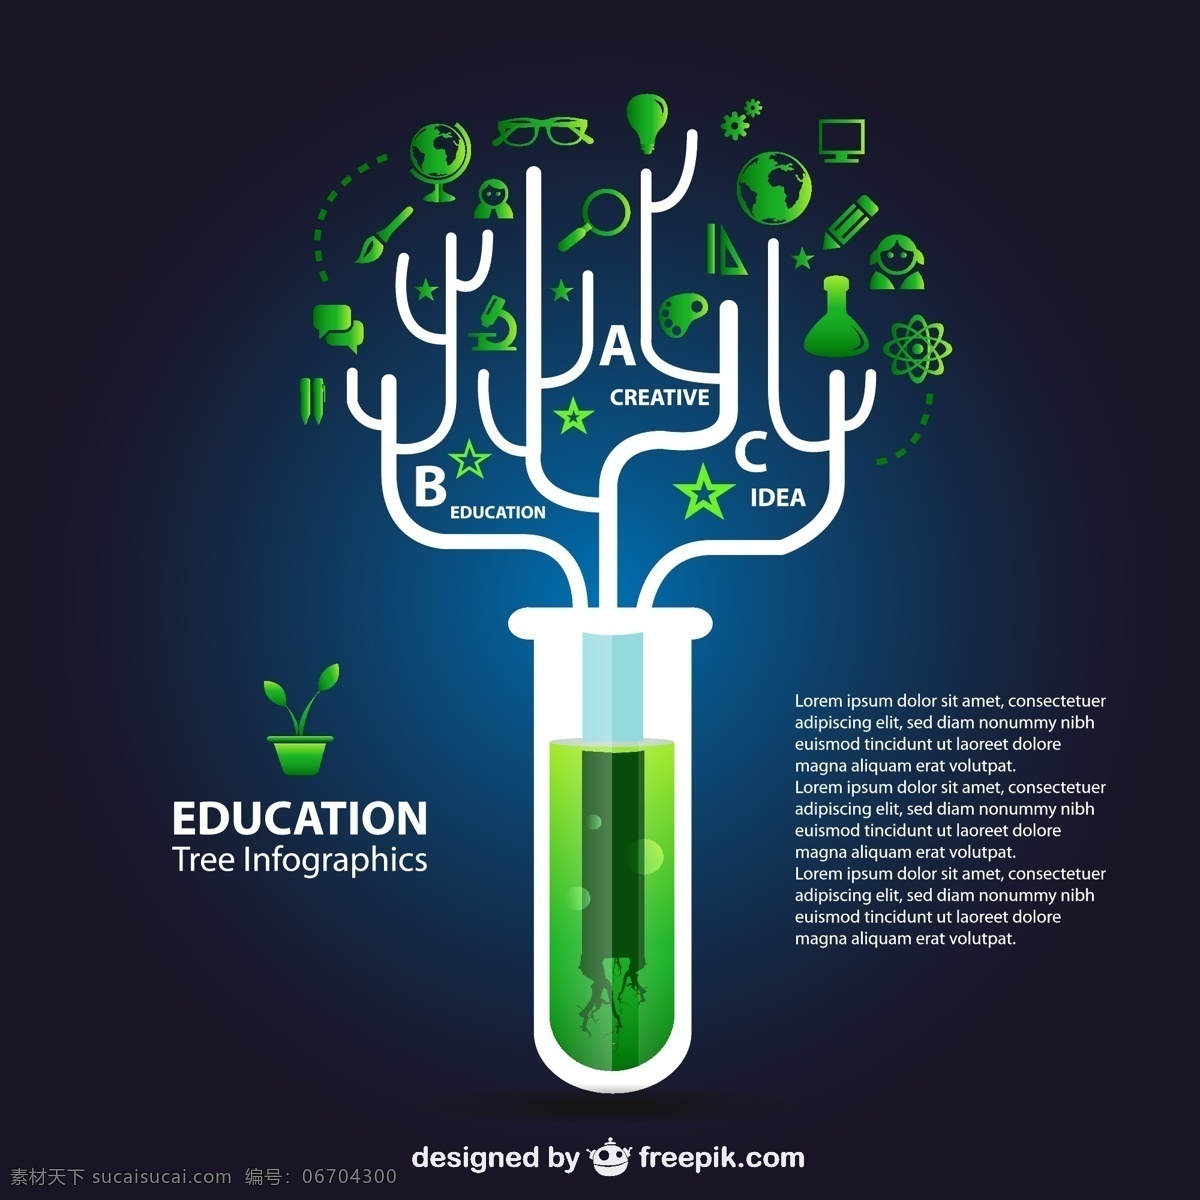 生态 教育 信息 图表 背景 树 图标 医疗 绿色 图形 绿色背景 布局 瓶 表现 平面设计 医学 丰富多彩 黑色